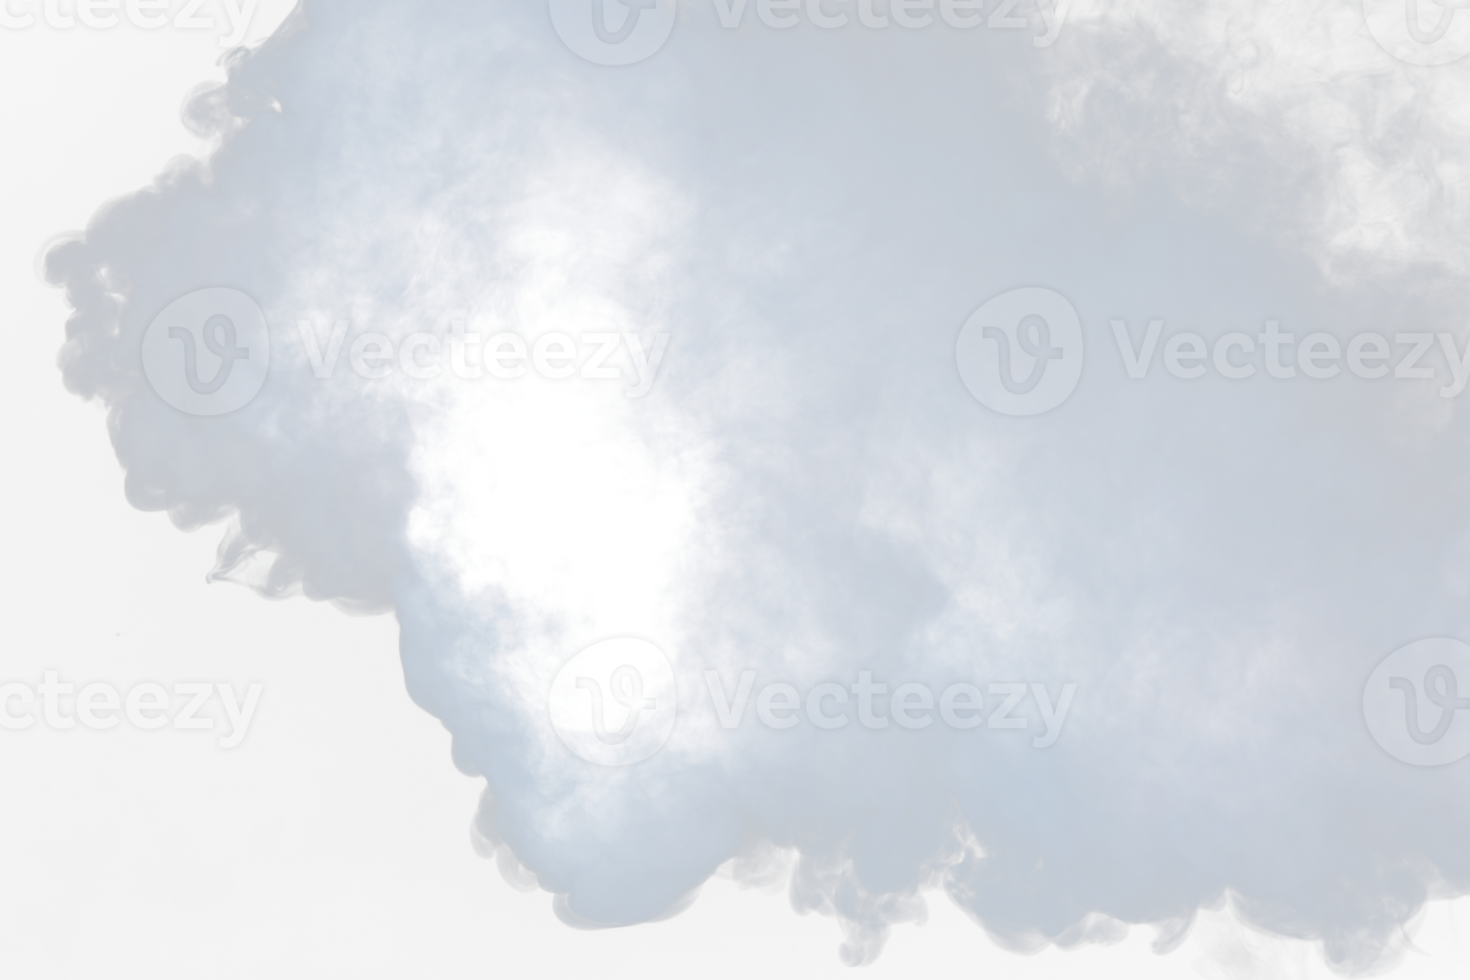 densos sopros fofos de fumaça branca e neblina em fundo png transparente, nuvens de fumaça abstratas, movimento desfocado fora de foco. golpes de fumaça da máquina de gelo seco voam no ar, textura de efeito